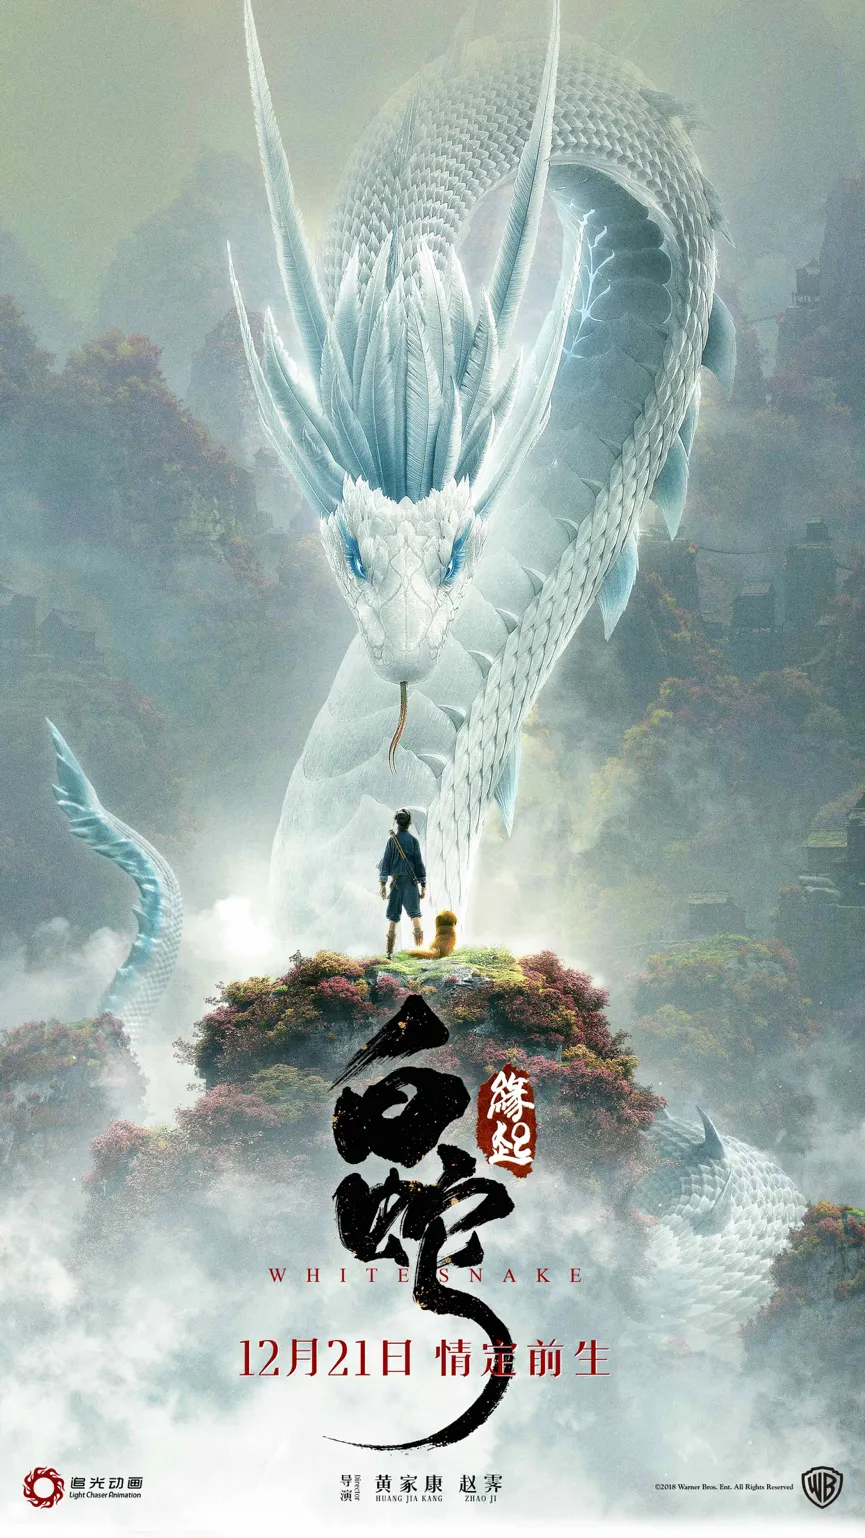 White snake: origin poster. PNG